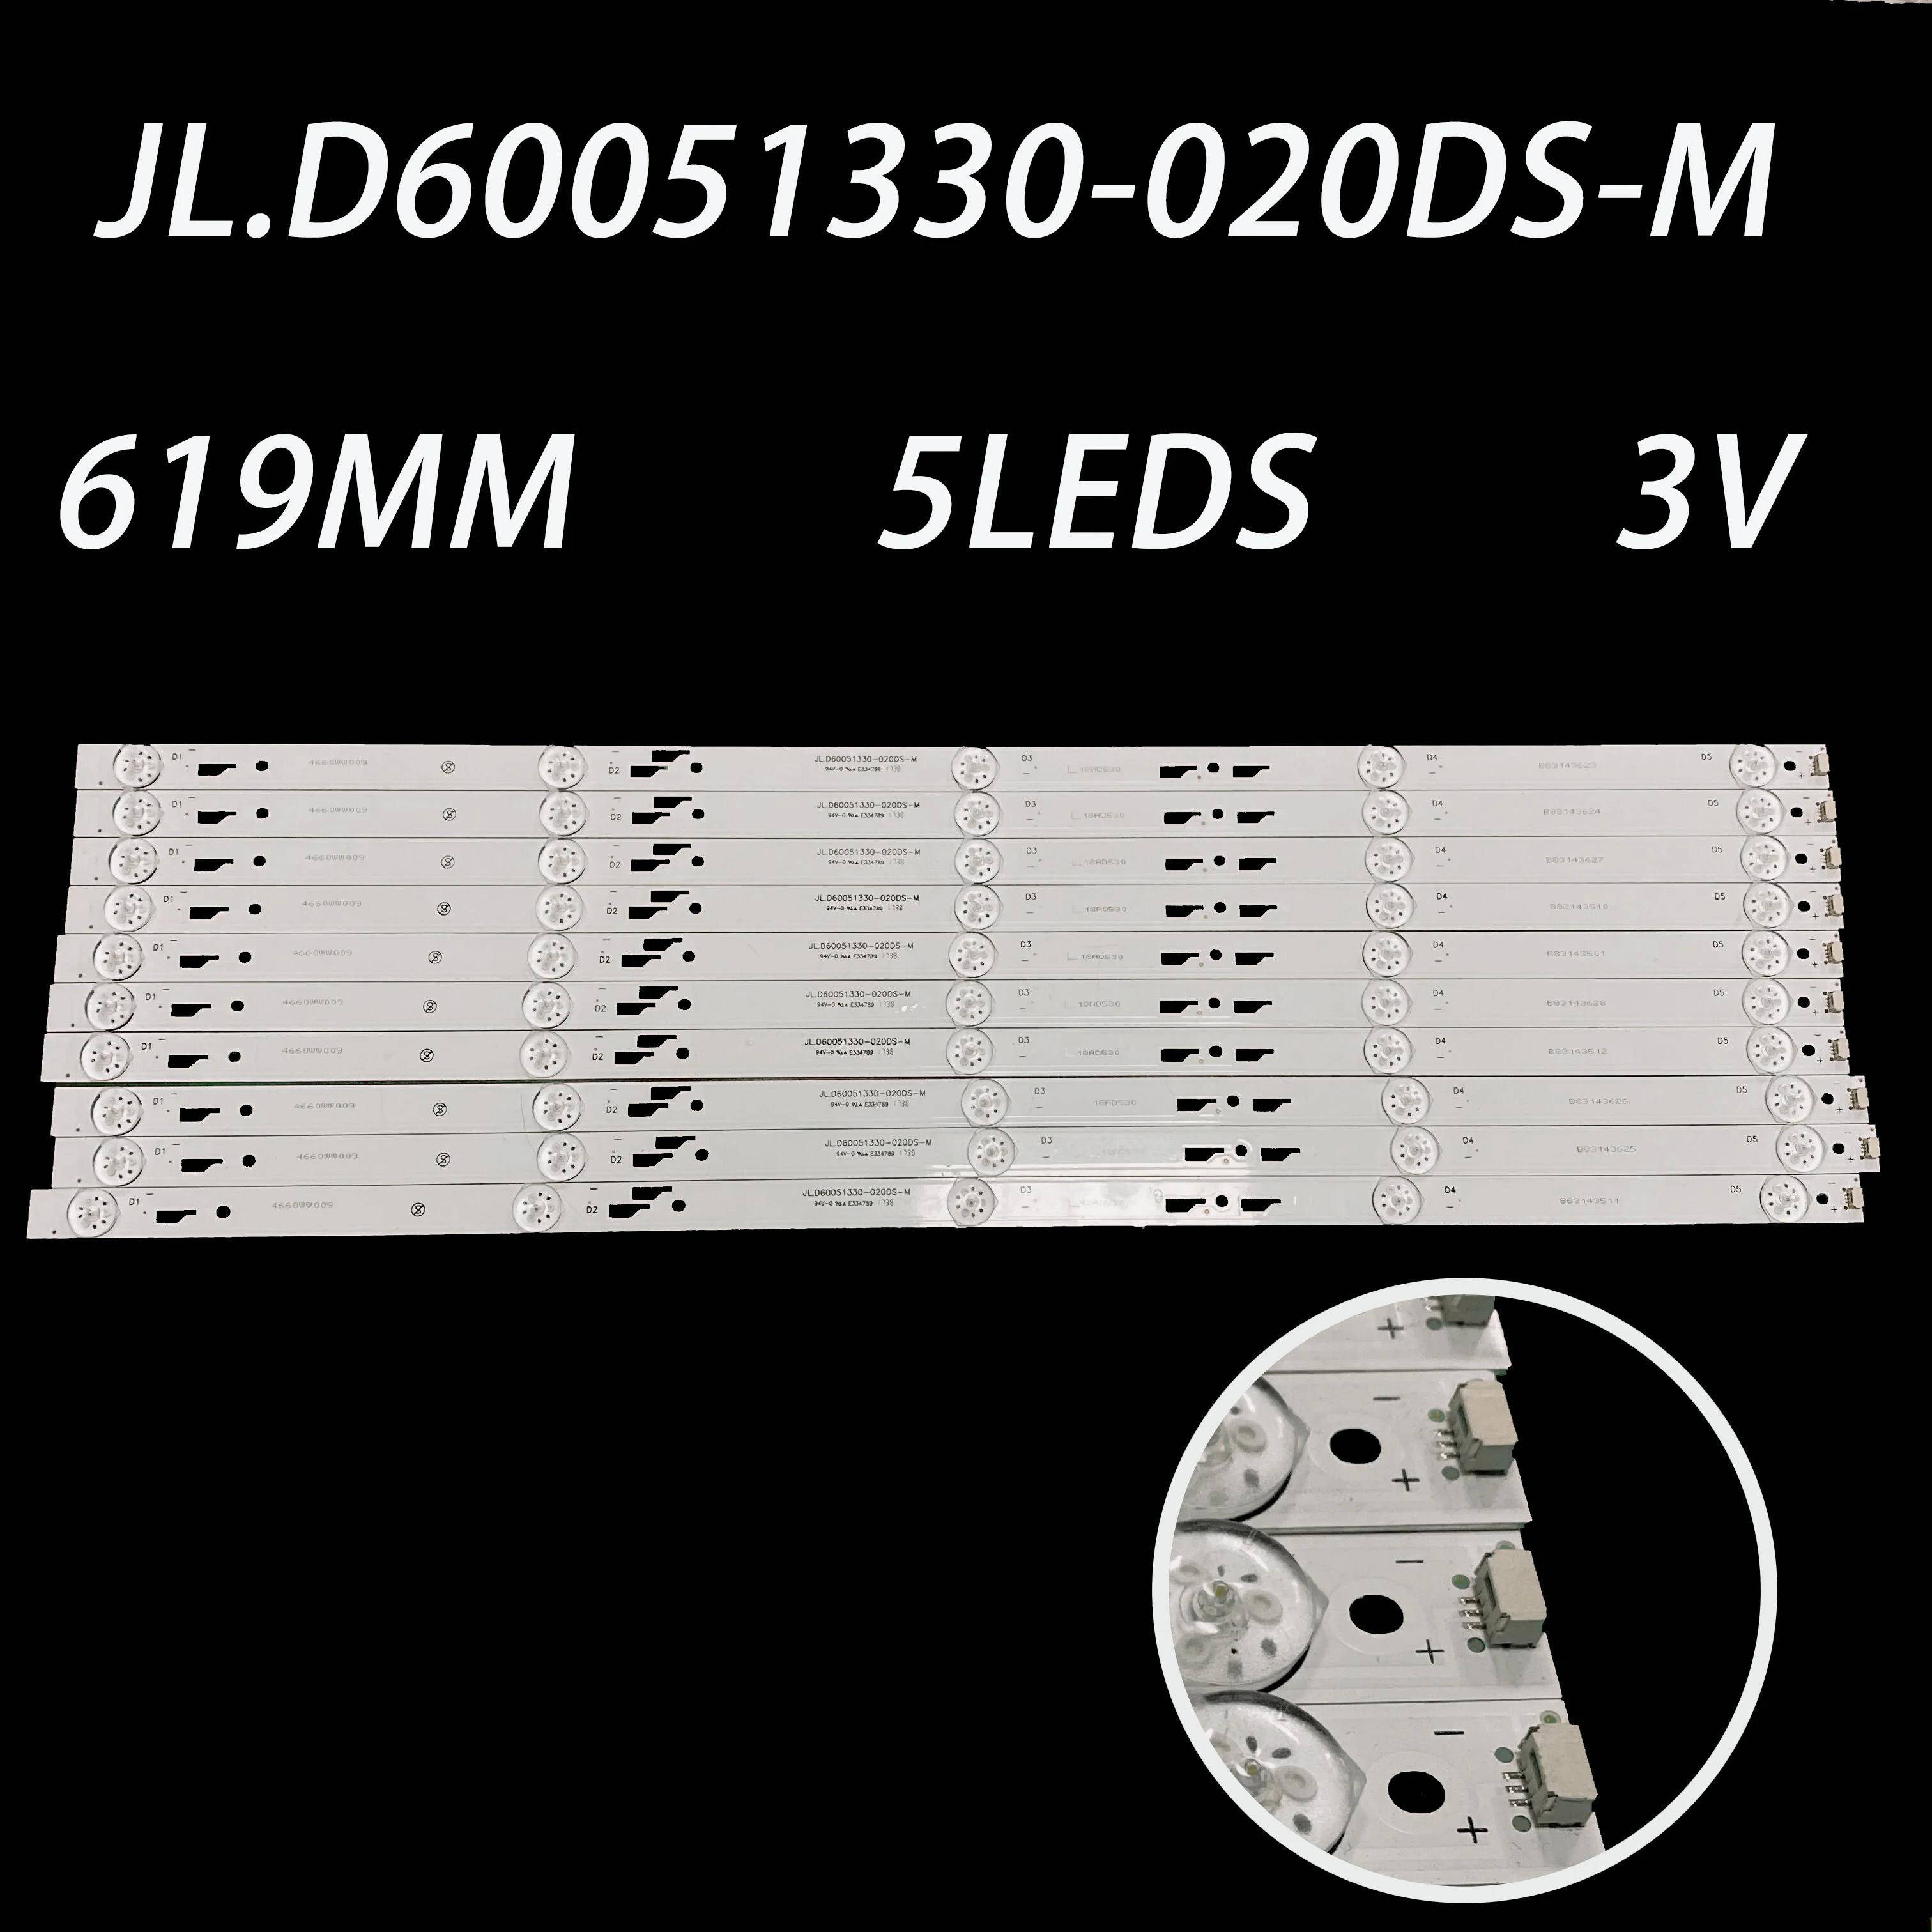  LED Ʈ Ʈ , 619mm, 5 , jl.d60051330-020DS-M 3V, 10 